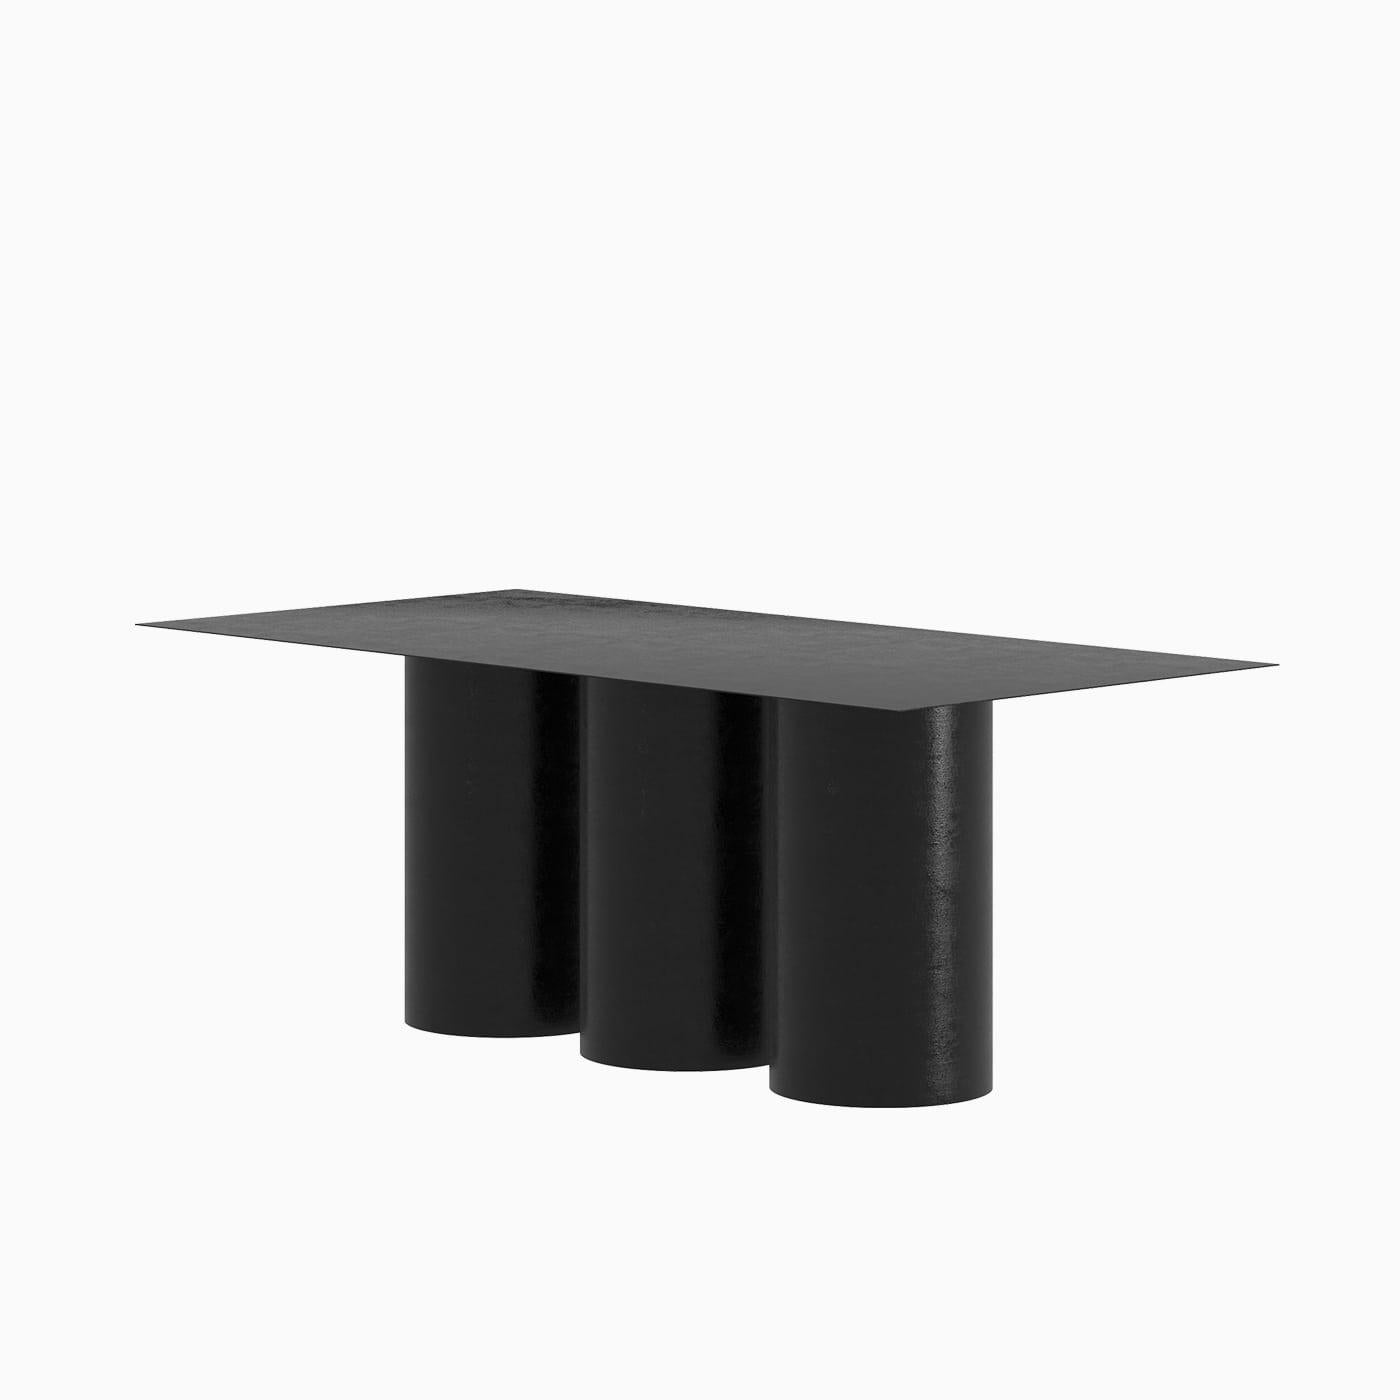 Der Tripod Dining Table ist ein monolithisches Stück, das als Esstisch für den Innen- und Außenbereich konzipiert wurde. 
Von Hand aus galvanisiertem Aluminium gefertigt und mit einer matten elektrostatischen Beschichtung versehen, kann seine Größe